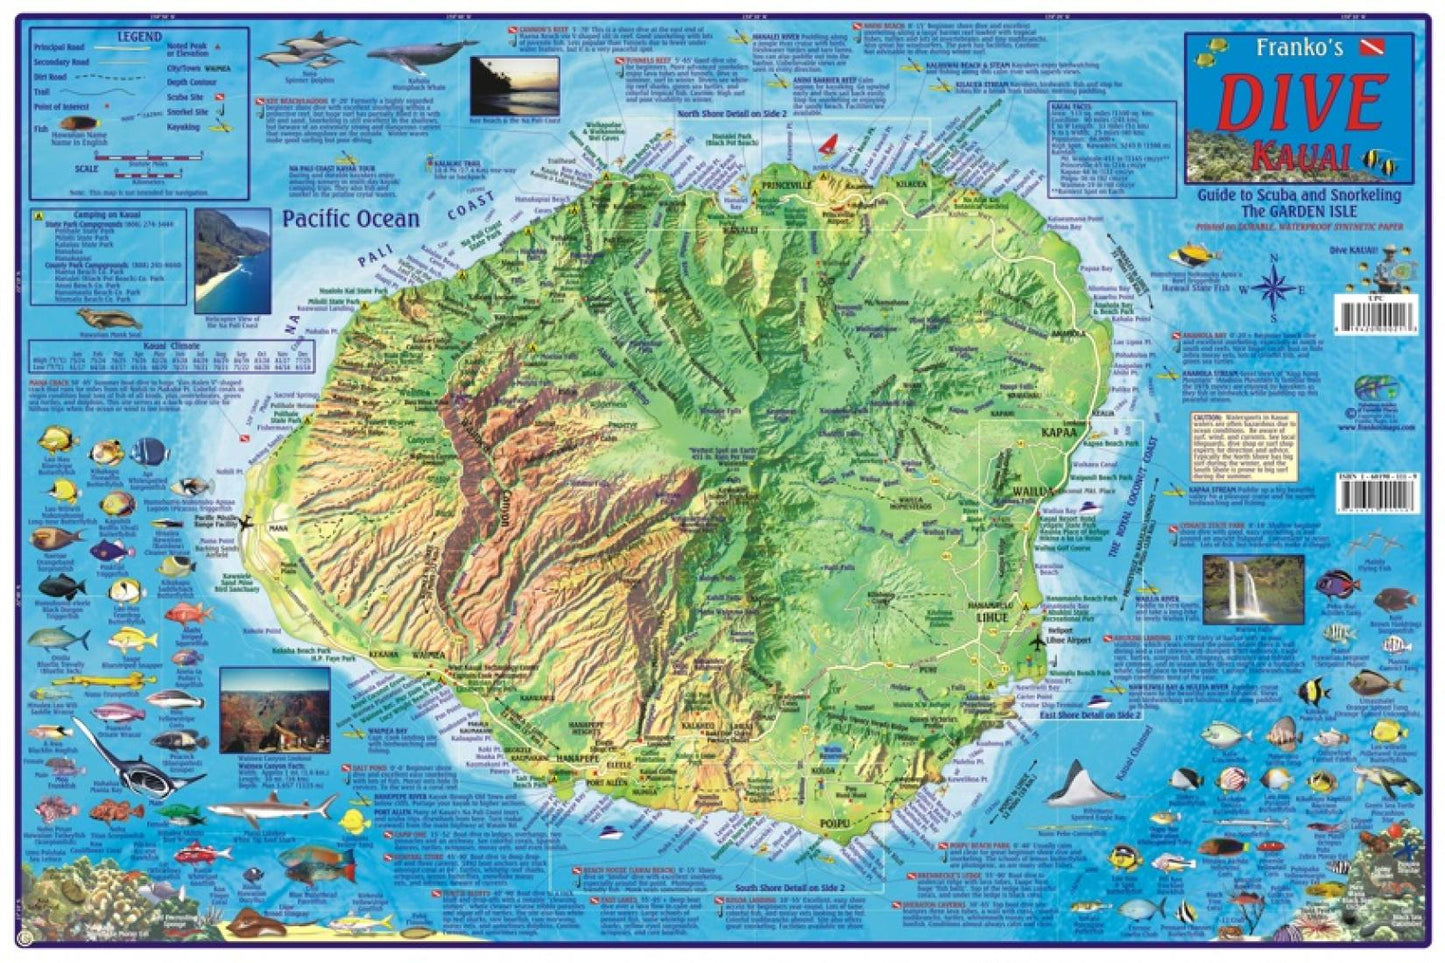 Franko's dive Kauai